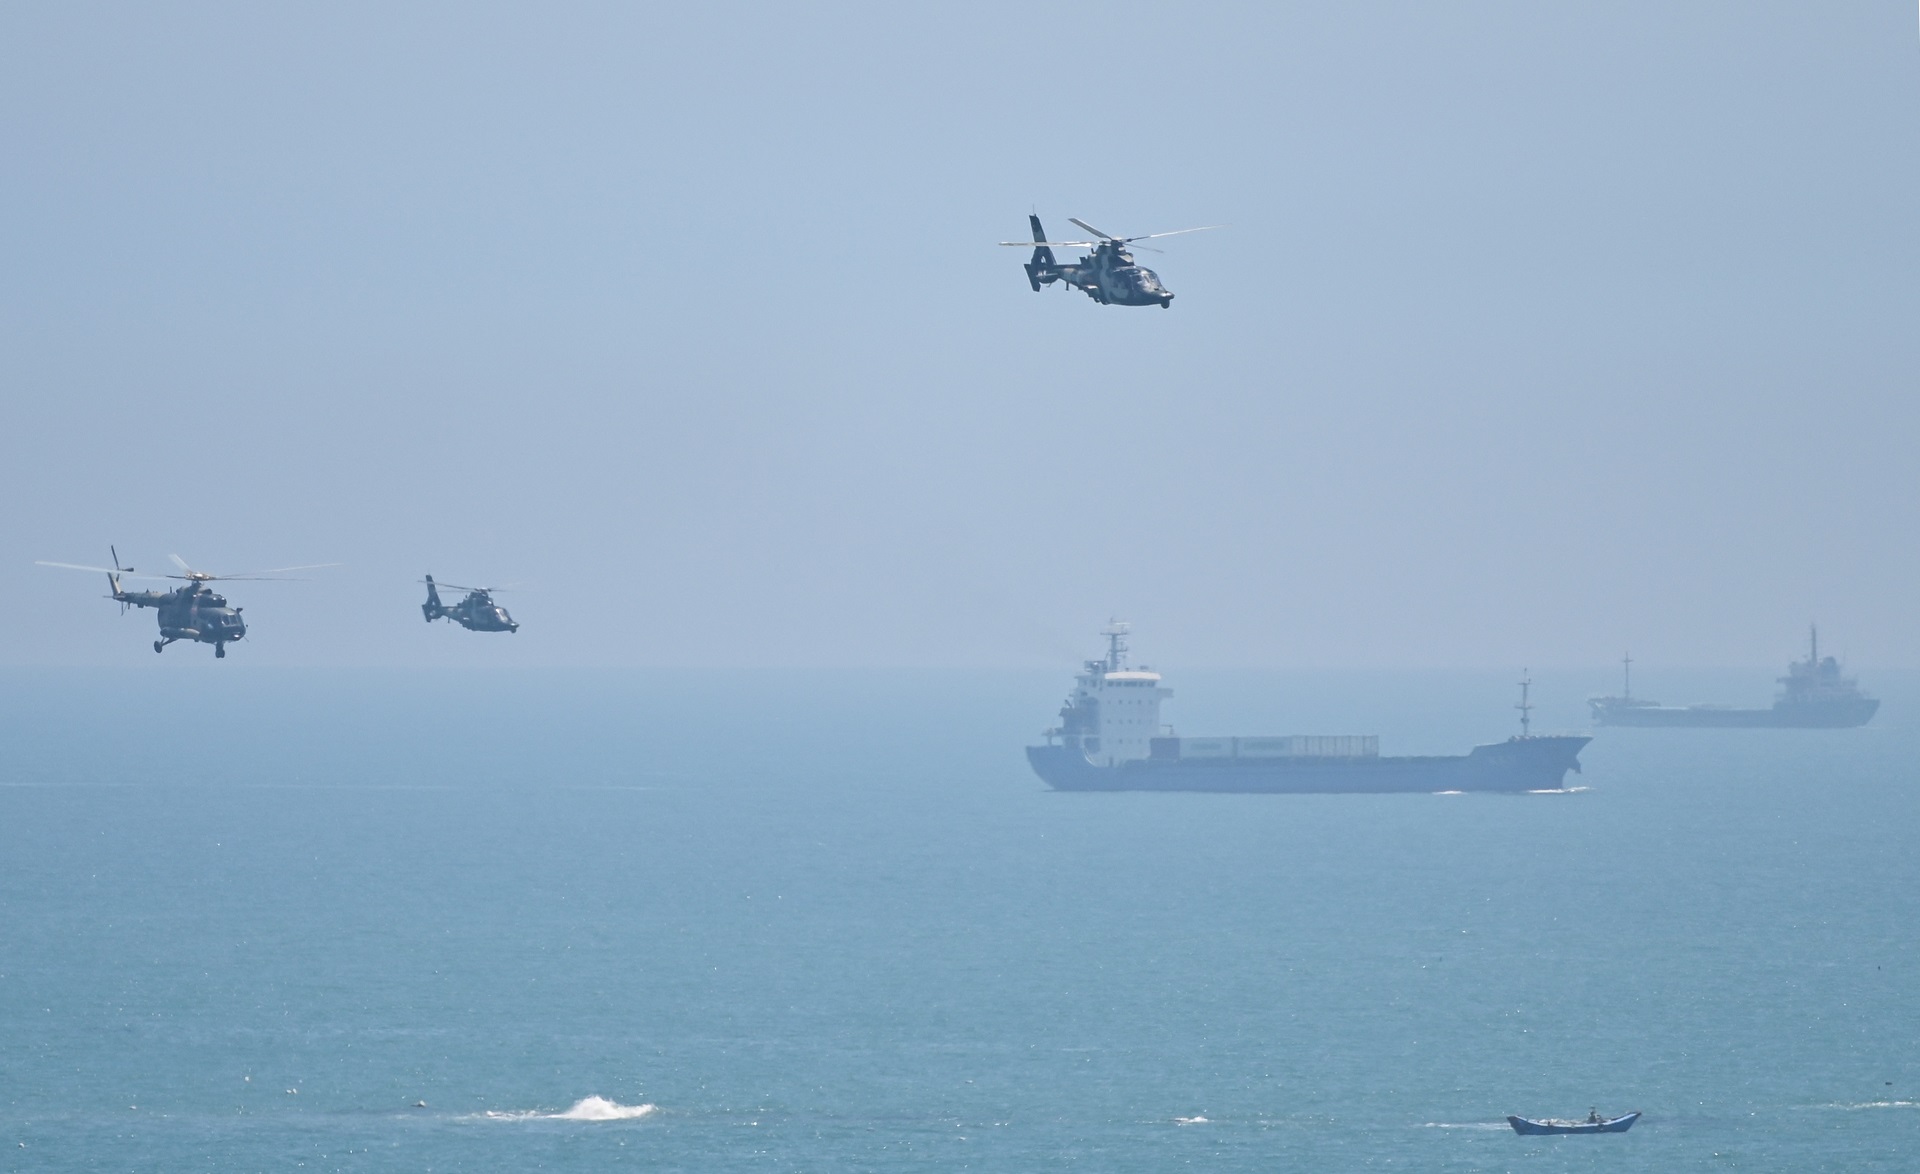 Despliegue de helicópteros militares chinos hacia el estrecho de Taiwán, vistos desde China continental en Pingtan (AFP)